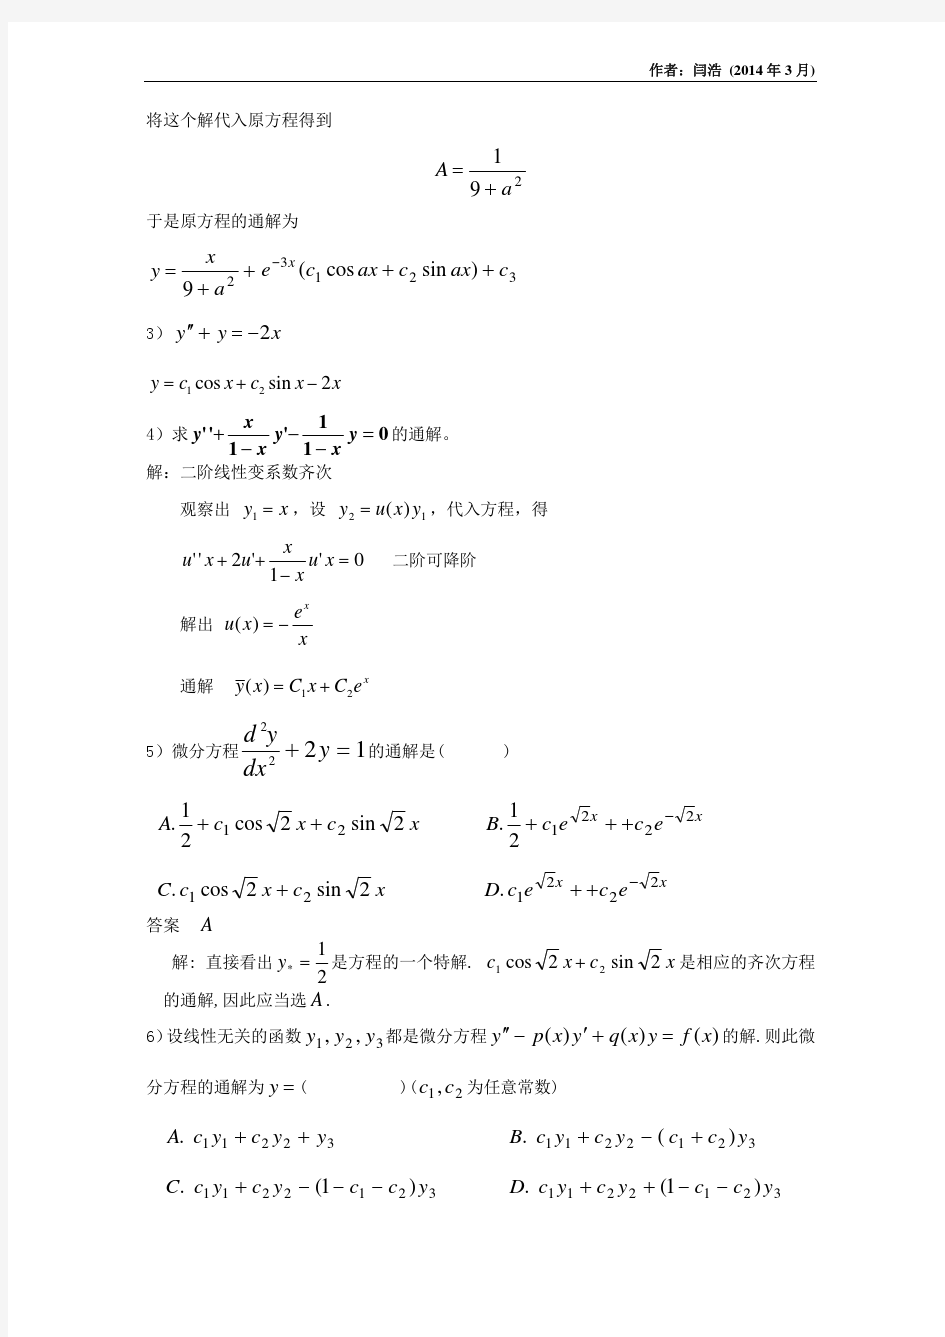 清华大学微积分B(2)第7次习题课答案(非齐次方程的通解特解欧拉方程朗斯基行列式)